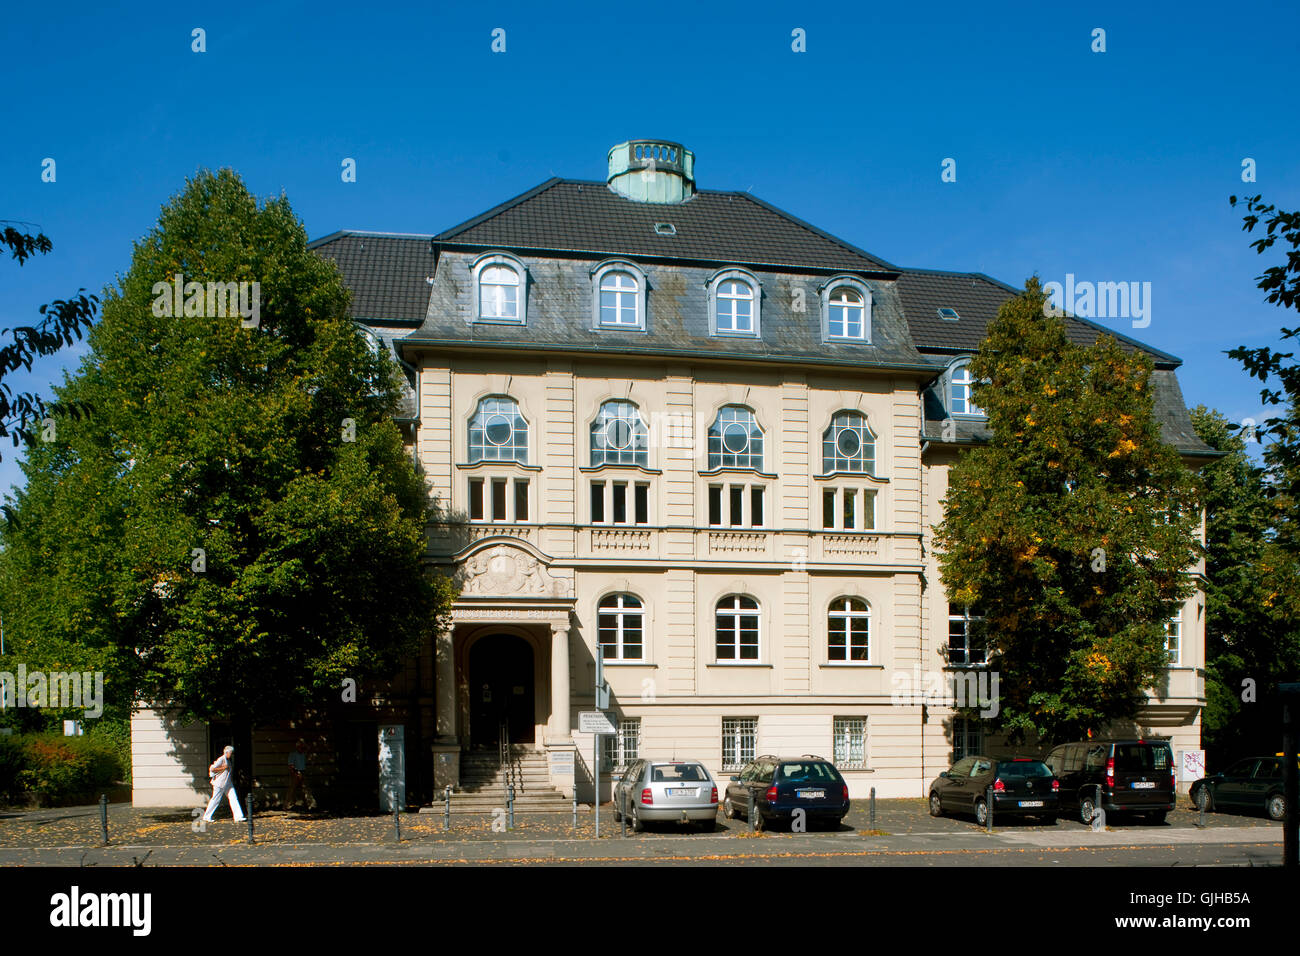 BRD, Deutschland, NRW, Brühl, Balthasar-Neumann-Platz 3, das Amtsgericht befindet sich in einem schˆnen Historischen Gebäude. Stock Photo